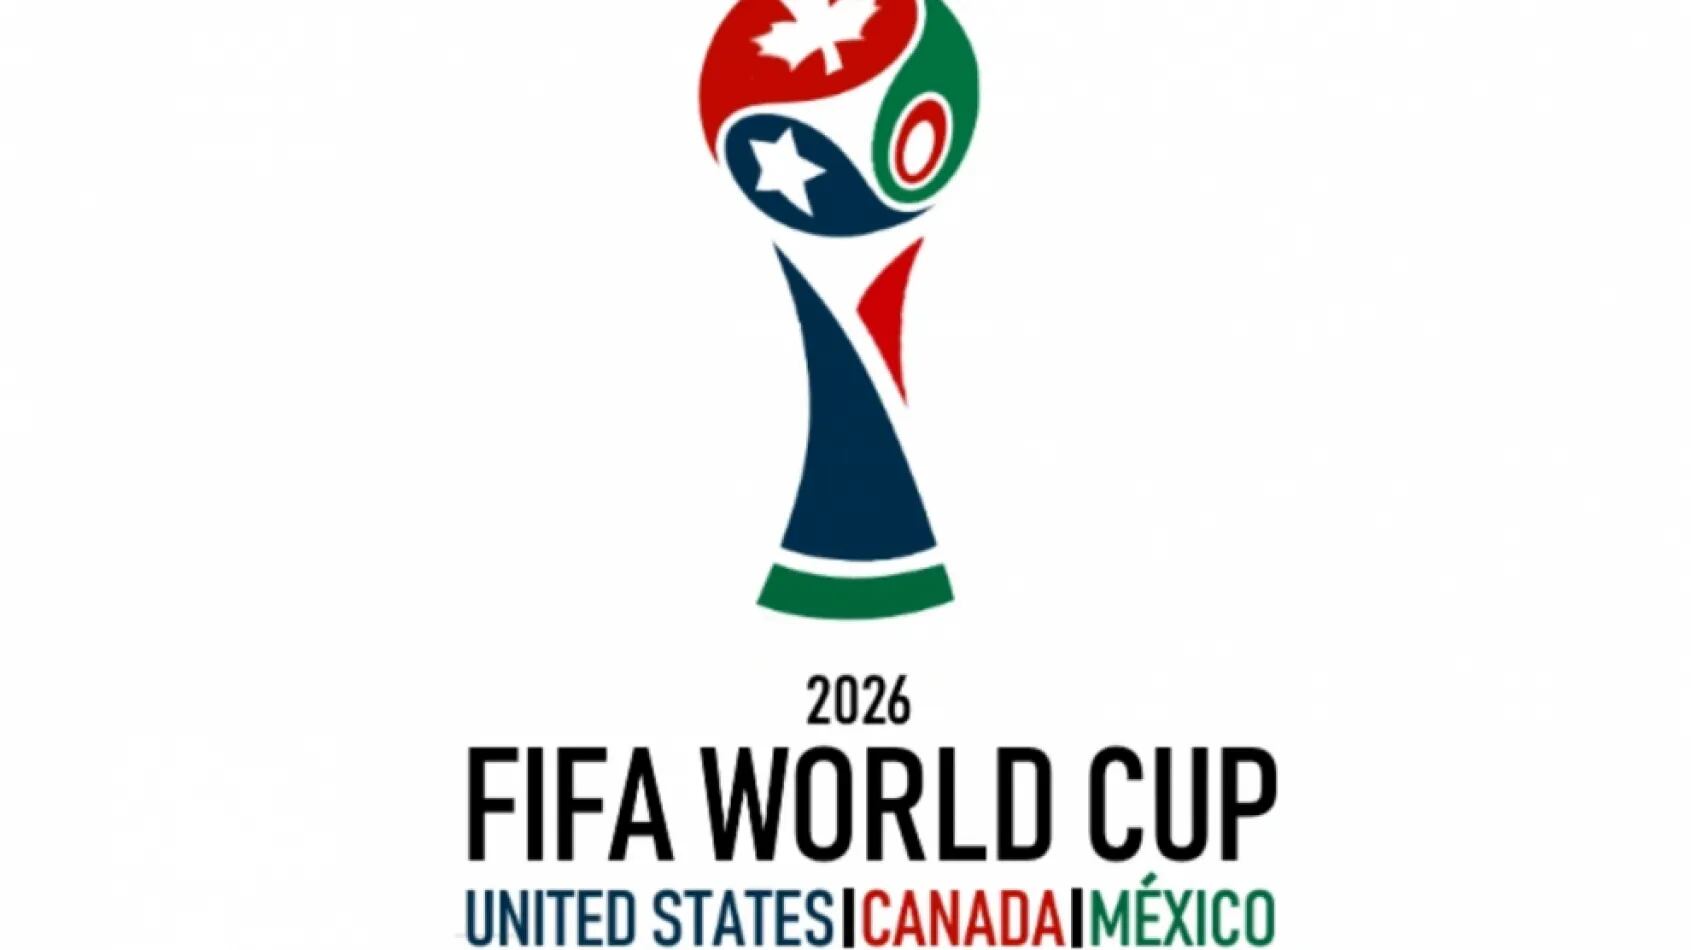 Copa del Mundo: la FIFA dio a conocer el nuevo formato que tendrá el Mundial 2026 con numerosos cambios